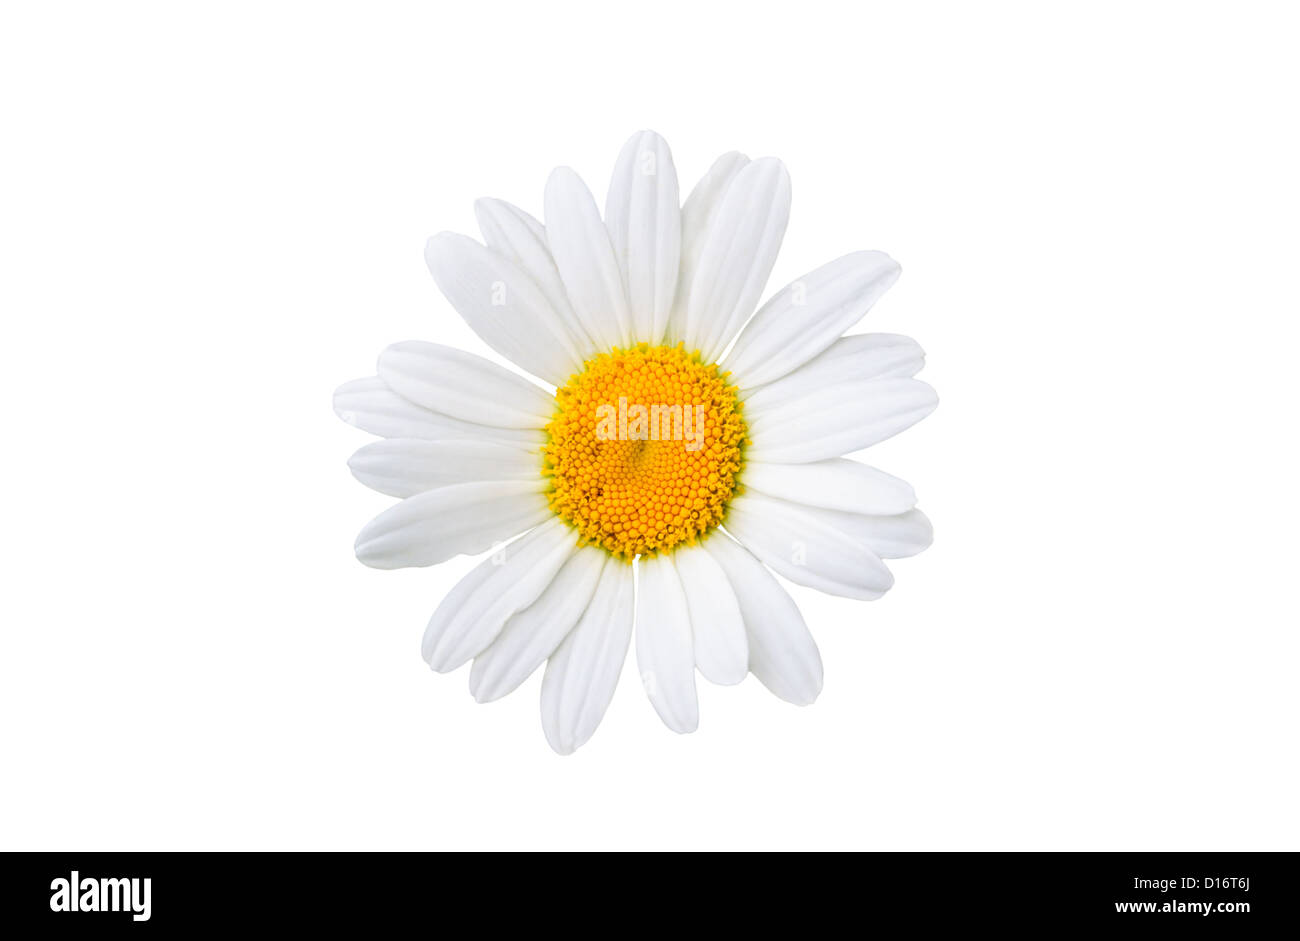 chamomile on white background Stock Photo